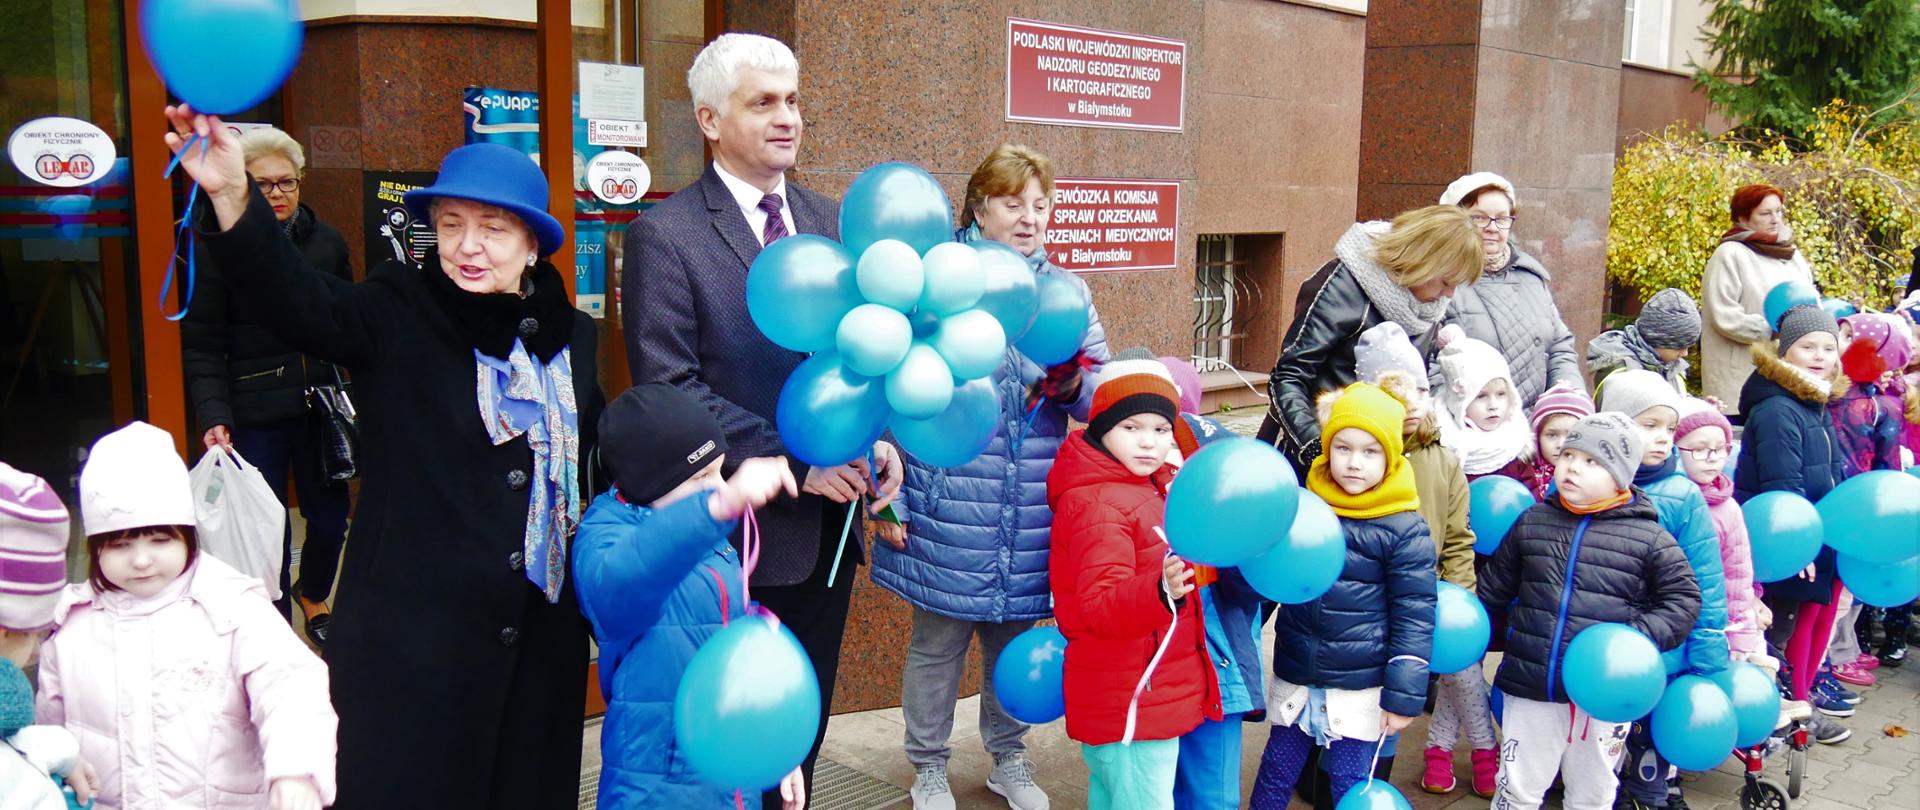 Wojewoda podlaski i białostockie dzieci uczciły 30. rocznicę podpisania Konwencji o prawach dziecka